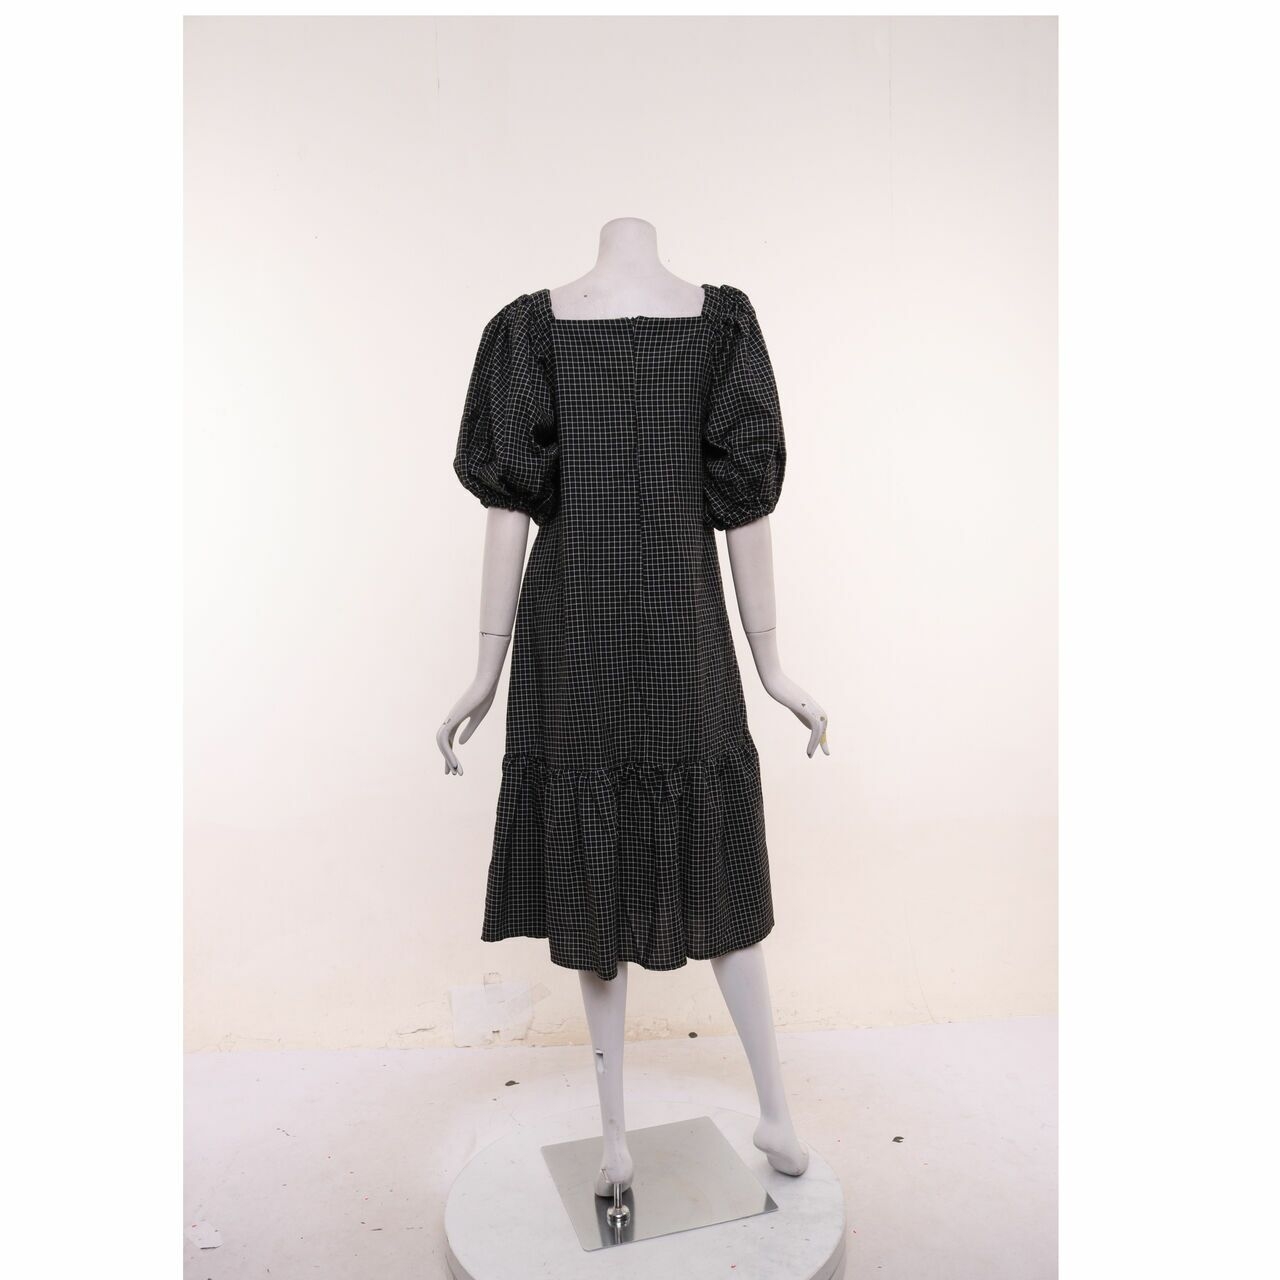 Miroir Black & White Checkered Midi Dress